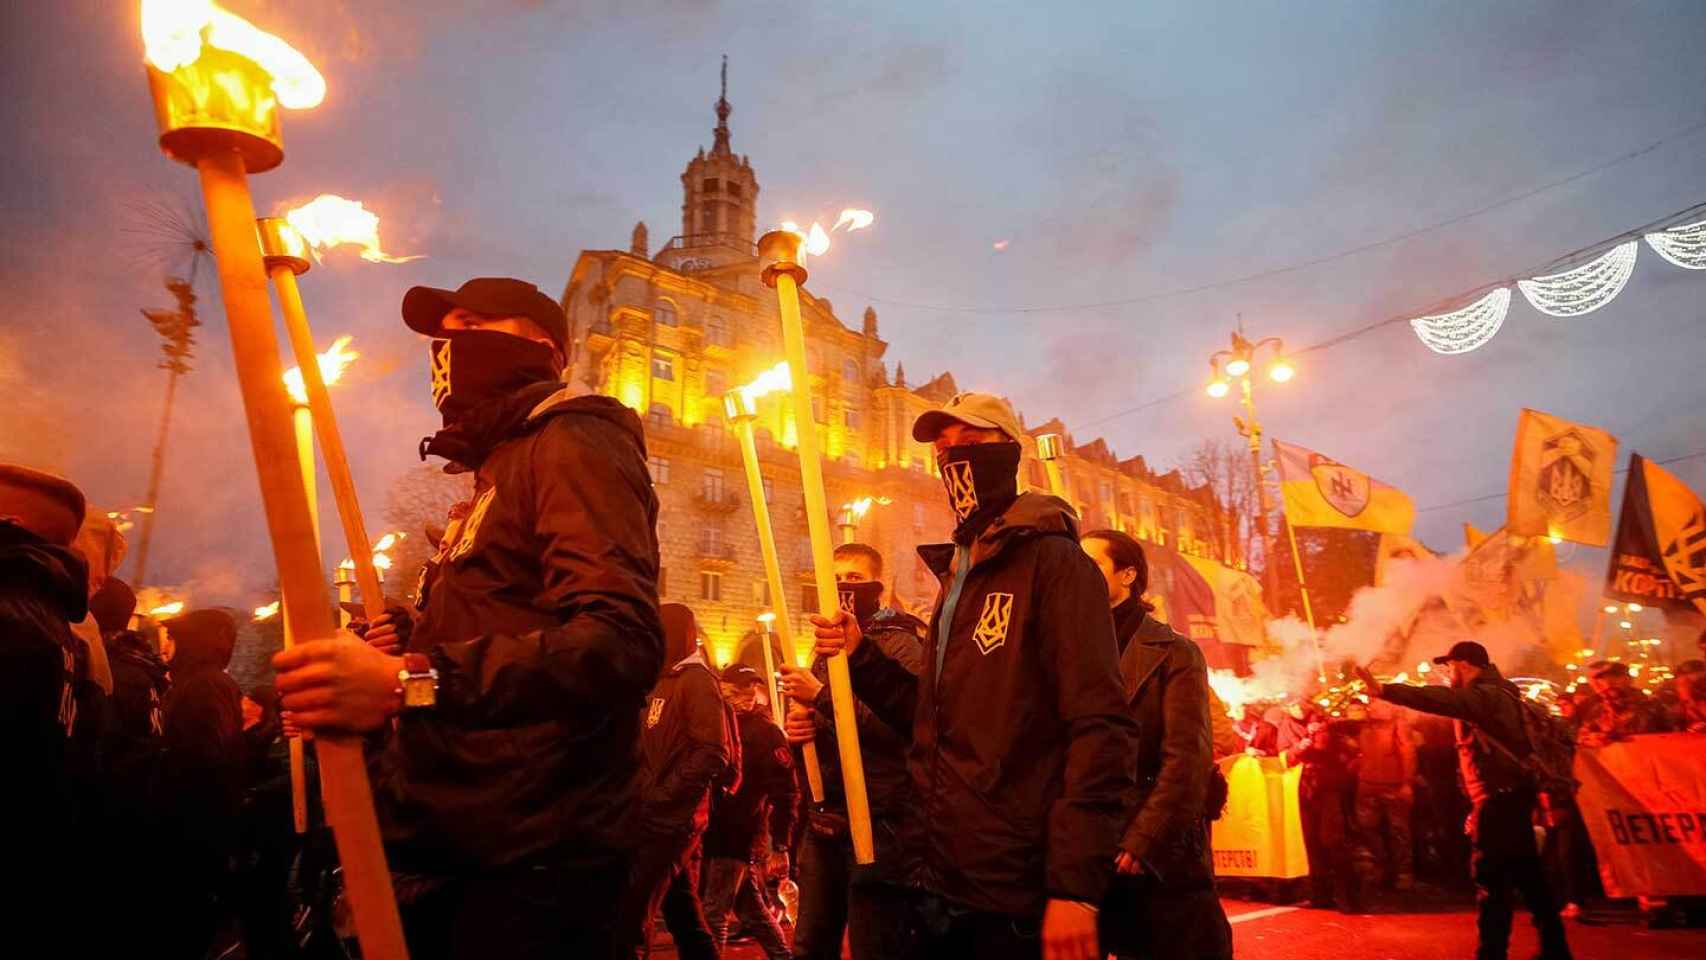 El Batallón Azov y otros grupos neonazis ucranianos desfilan en Kiev, en 2014.